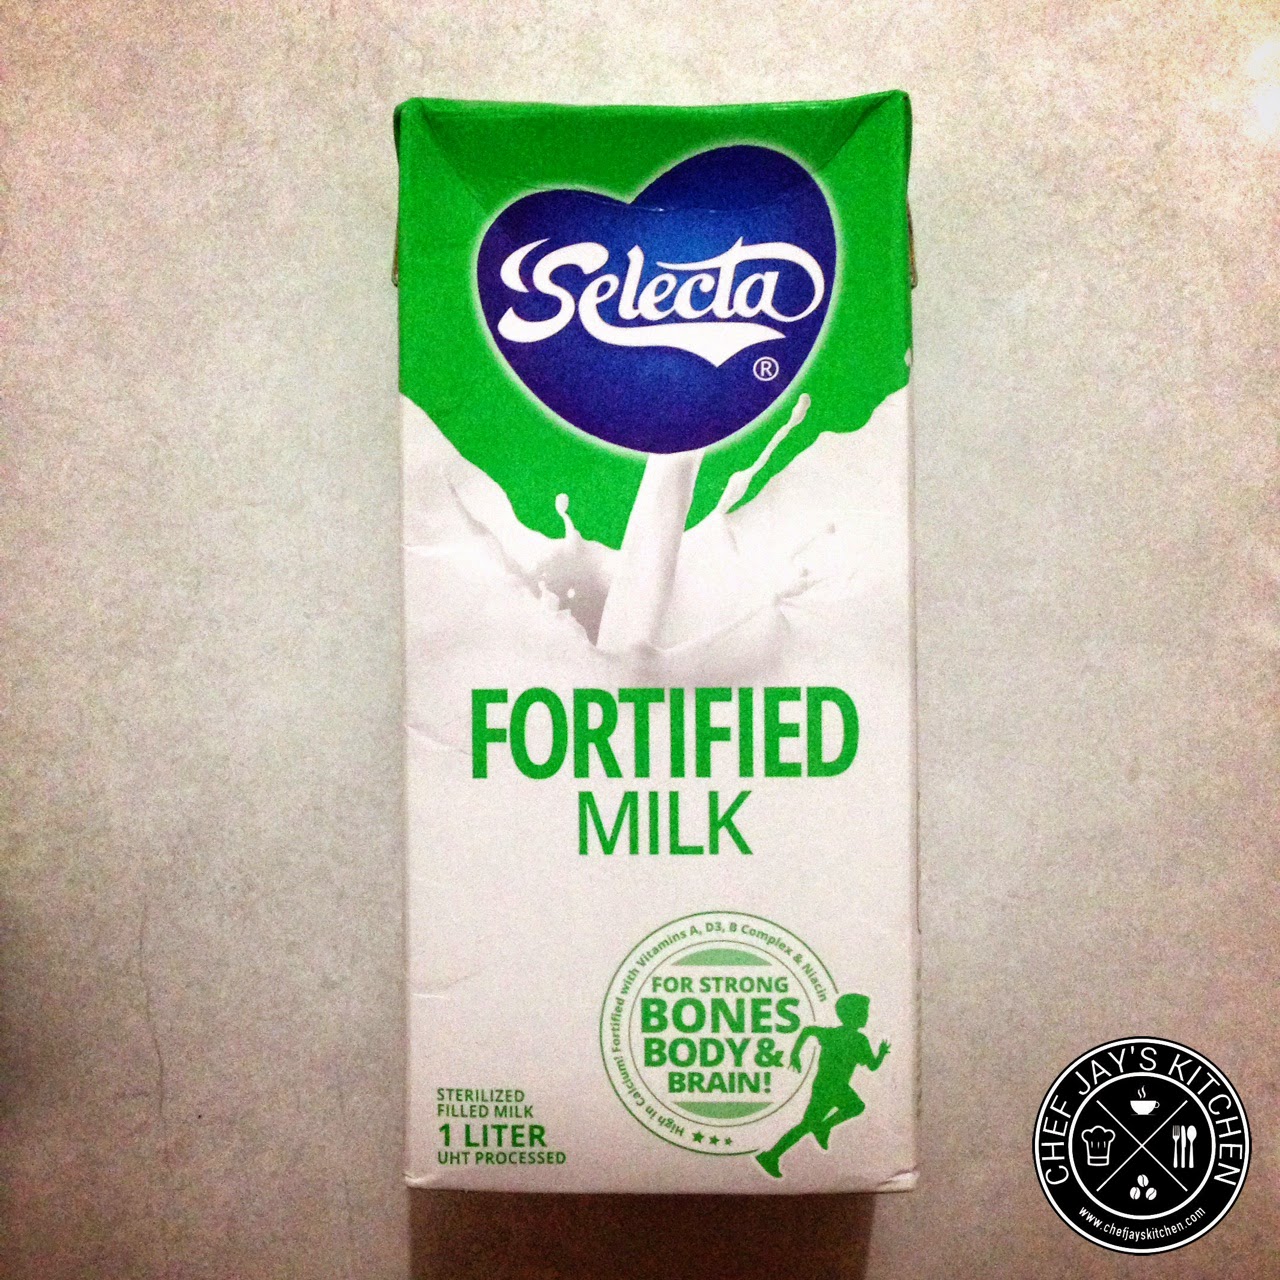 The Best Tasting Supermarket Fresh Milk - Selecta Fortified Milk